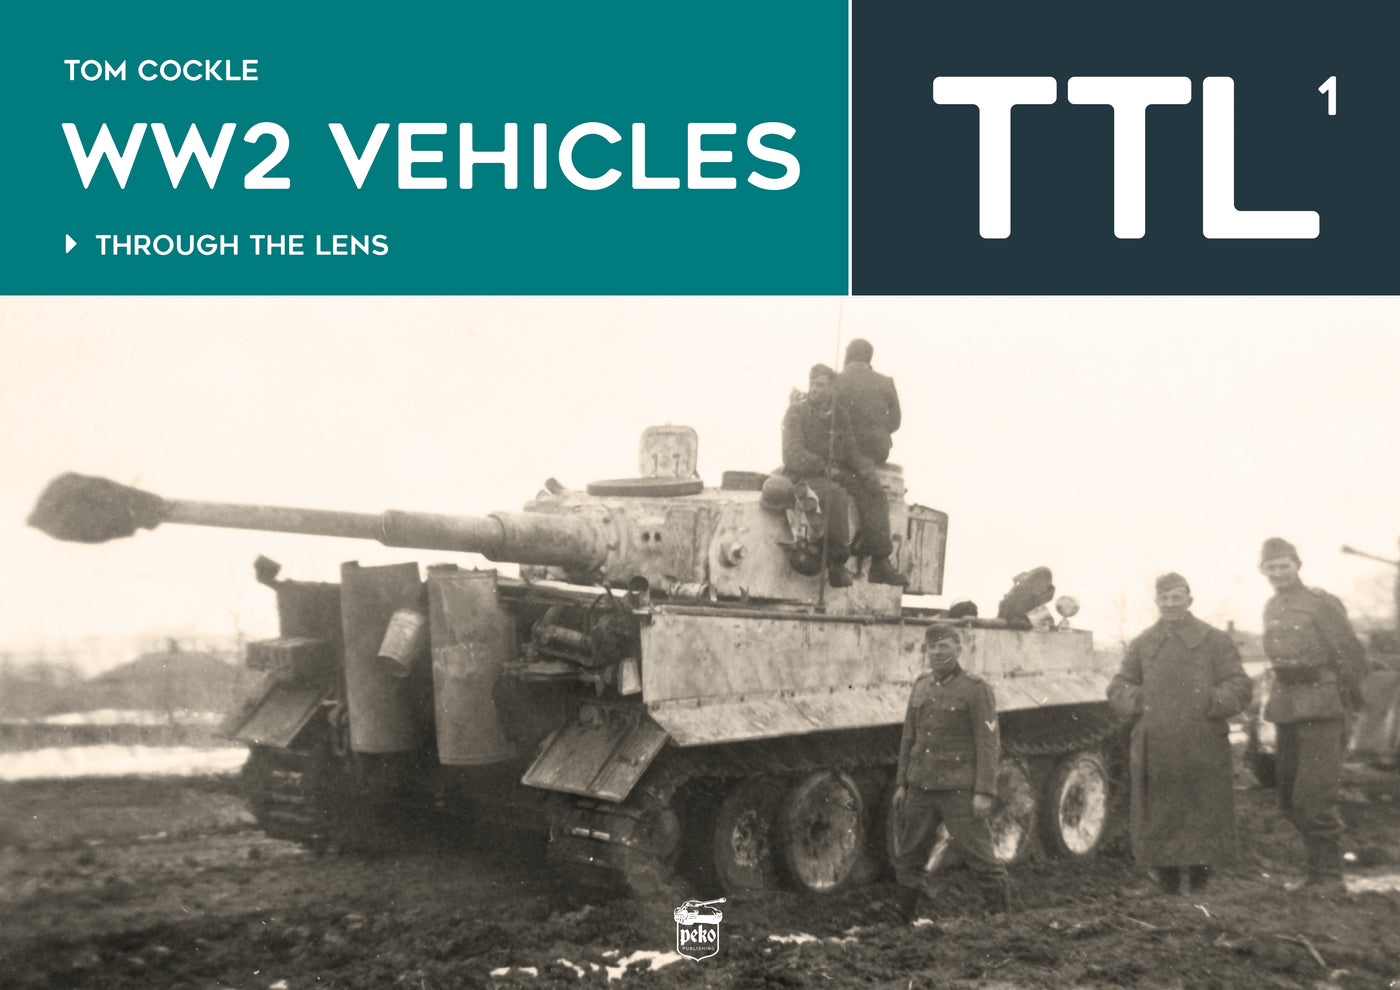 Fahrzeuge des Zweiten Weltkriegs durch die Linse Vol. 1